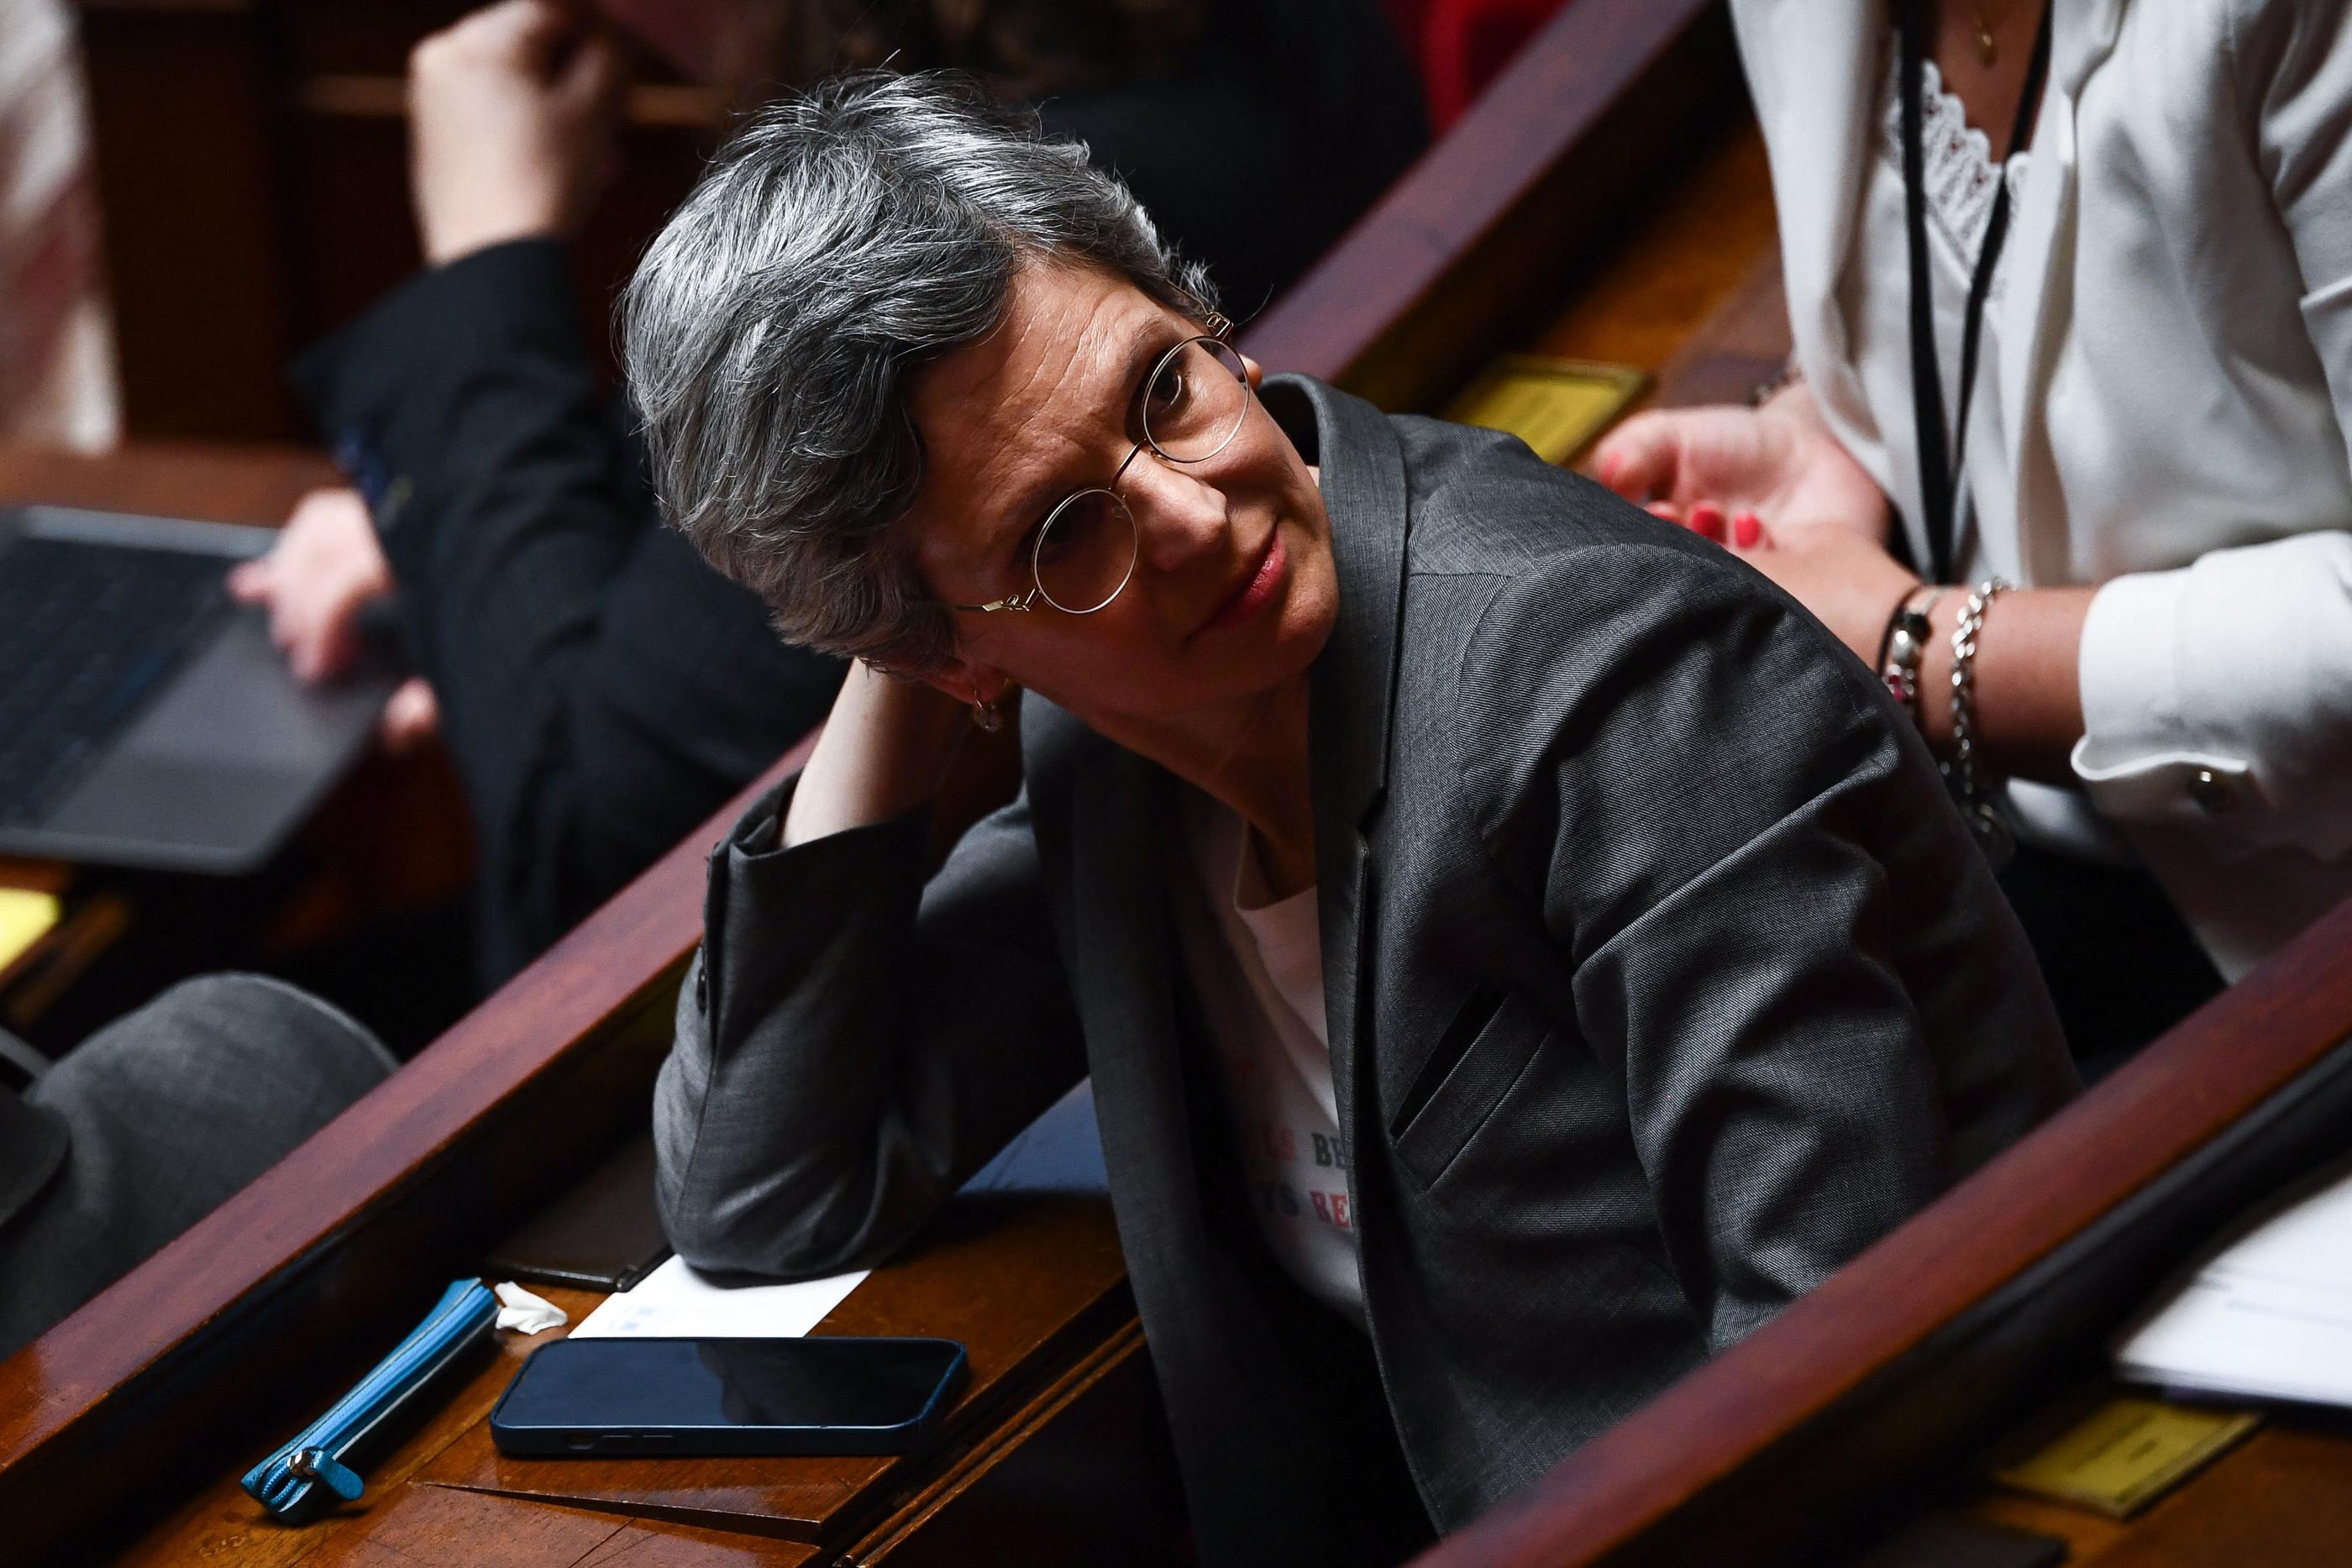 Sandrine Rousseau se voit reprocher d'avoir fourni une attestation pour un logement dans lequel elle ne vivait pas au moment de son inscription sur les listes électorales en vue des législatives. AFP/Christophe Archambault